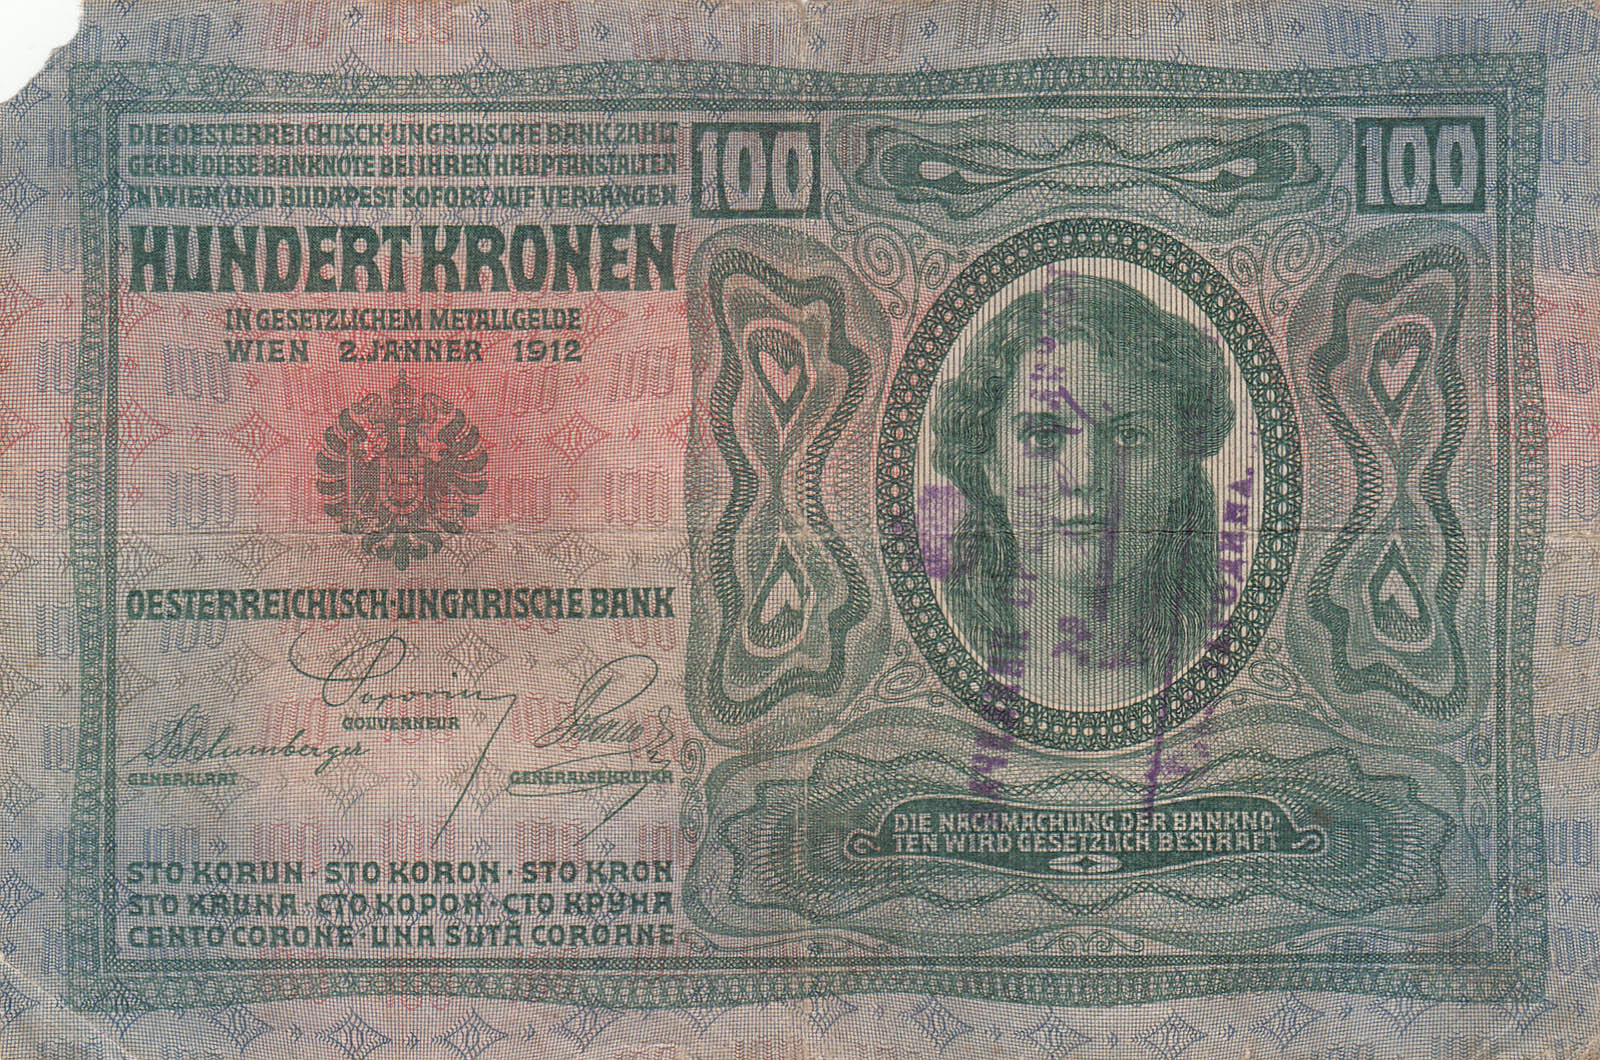 Аустроугарска новчаница од 100 круна са отиском печата начелника среза Беличког